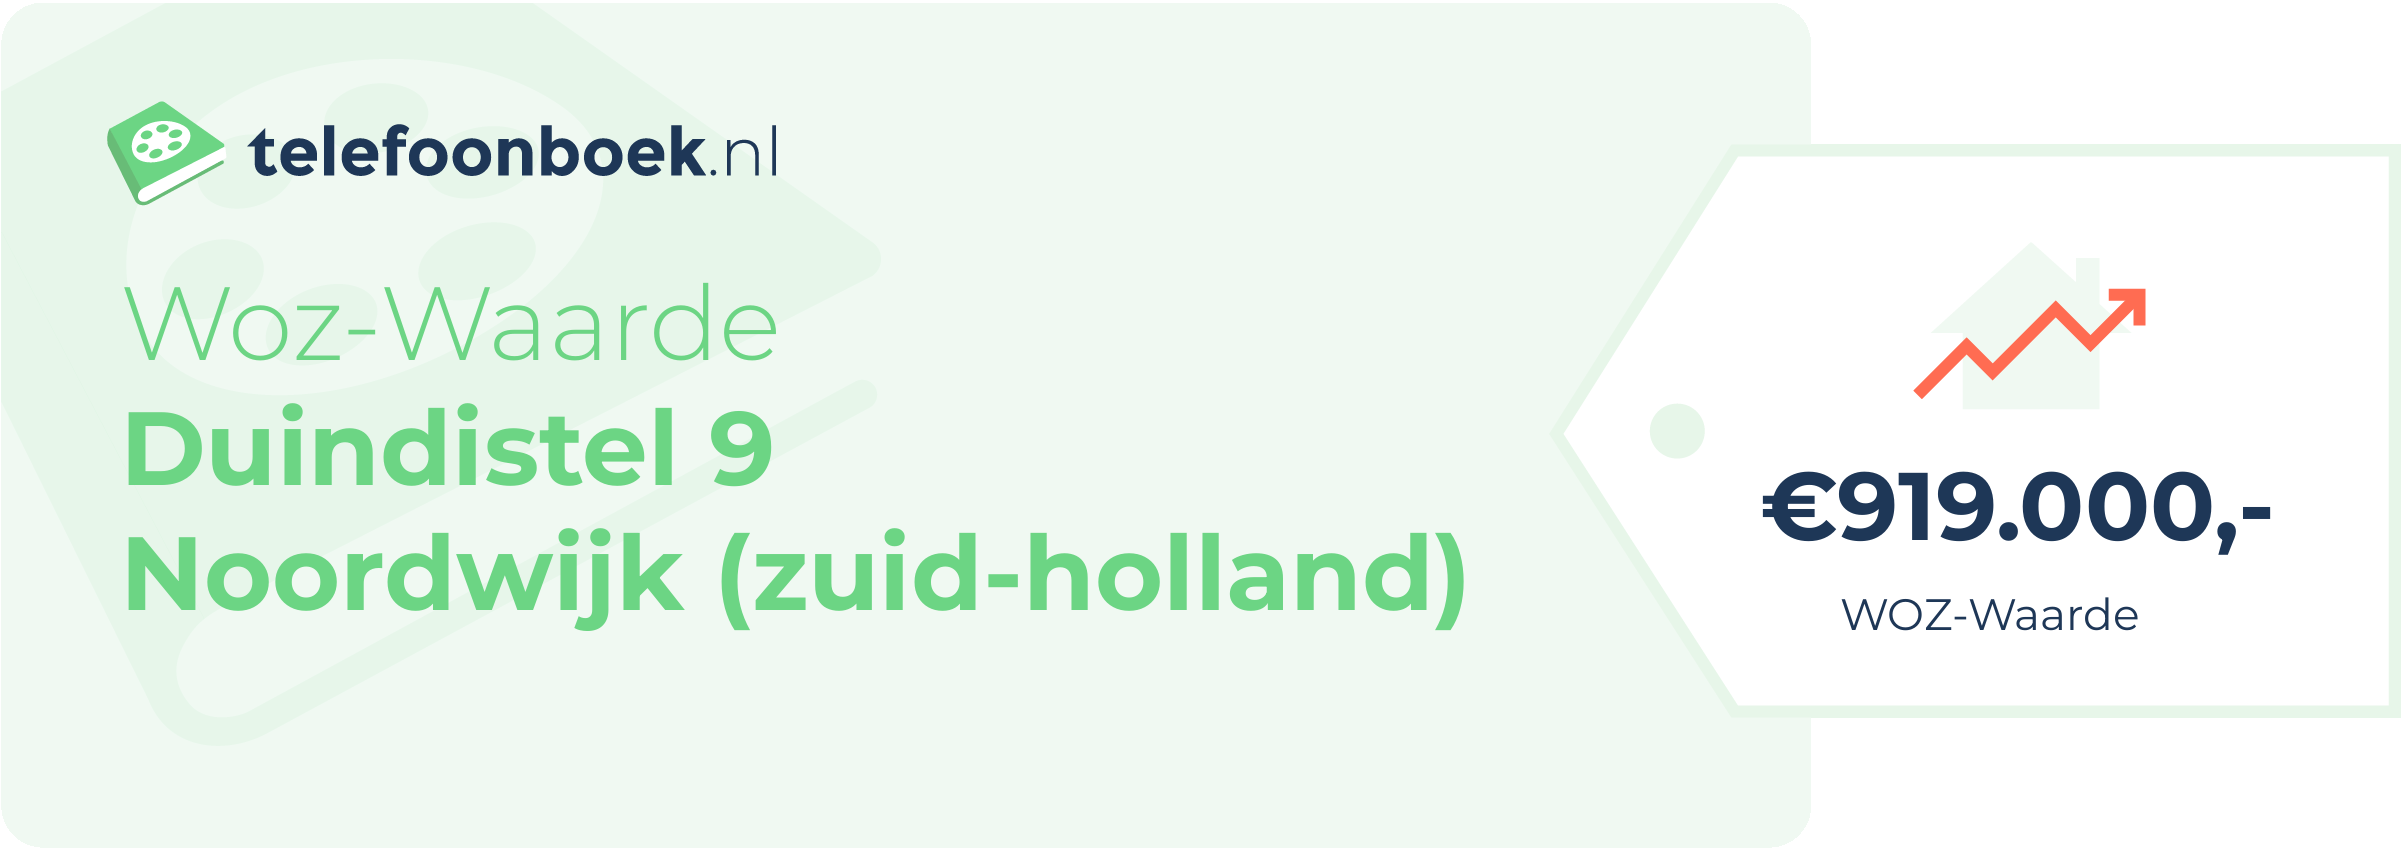 WOZ-waarde Duindistel 9 Noordwijk (Zuid-Holland)